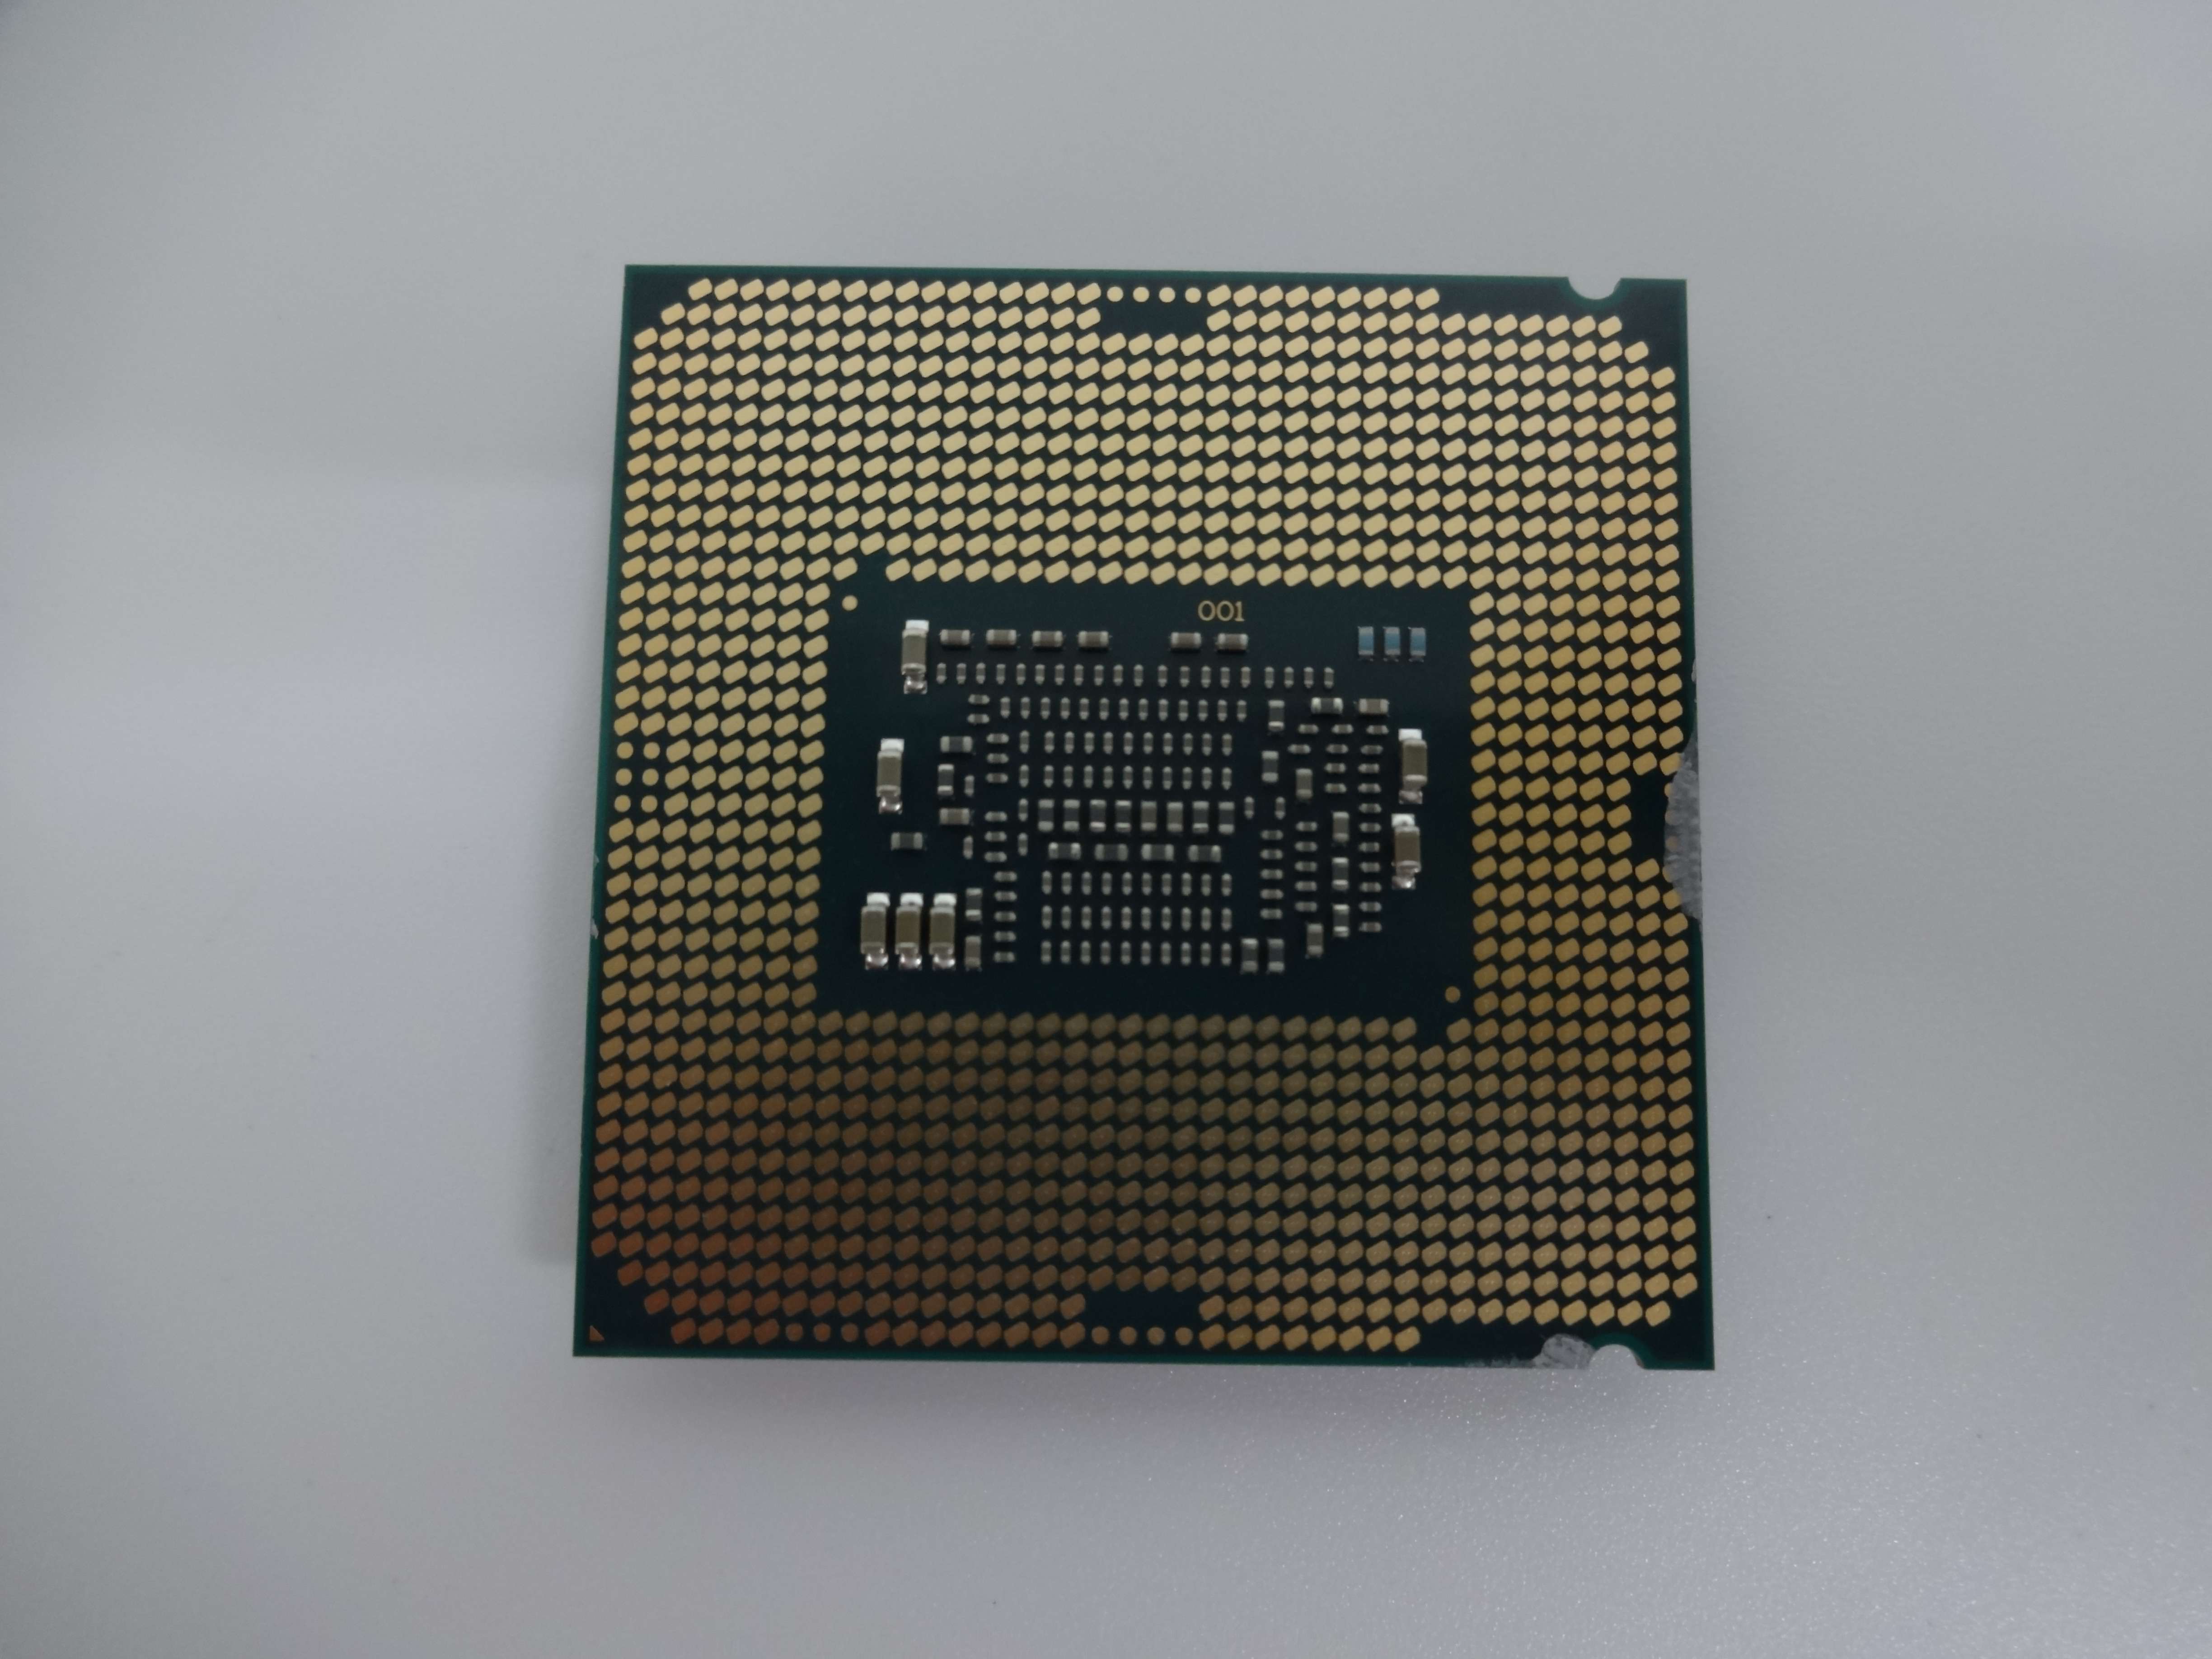 Bộ vi xử lý CPU Intel Core i3-9100 (Hàng tray - Mới 100%) (CPUPC116) - Hàng chính hãng